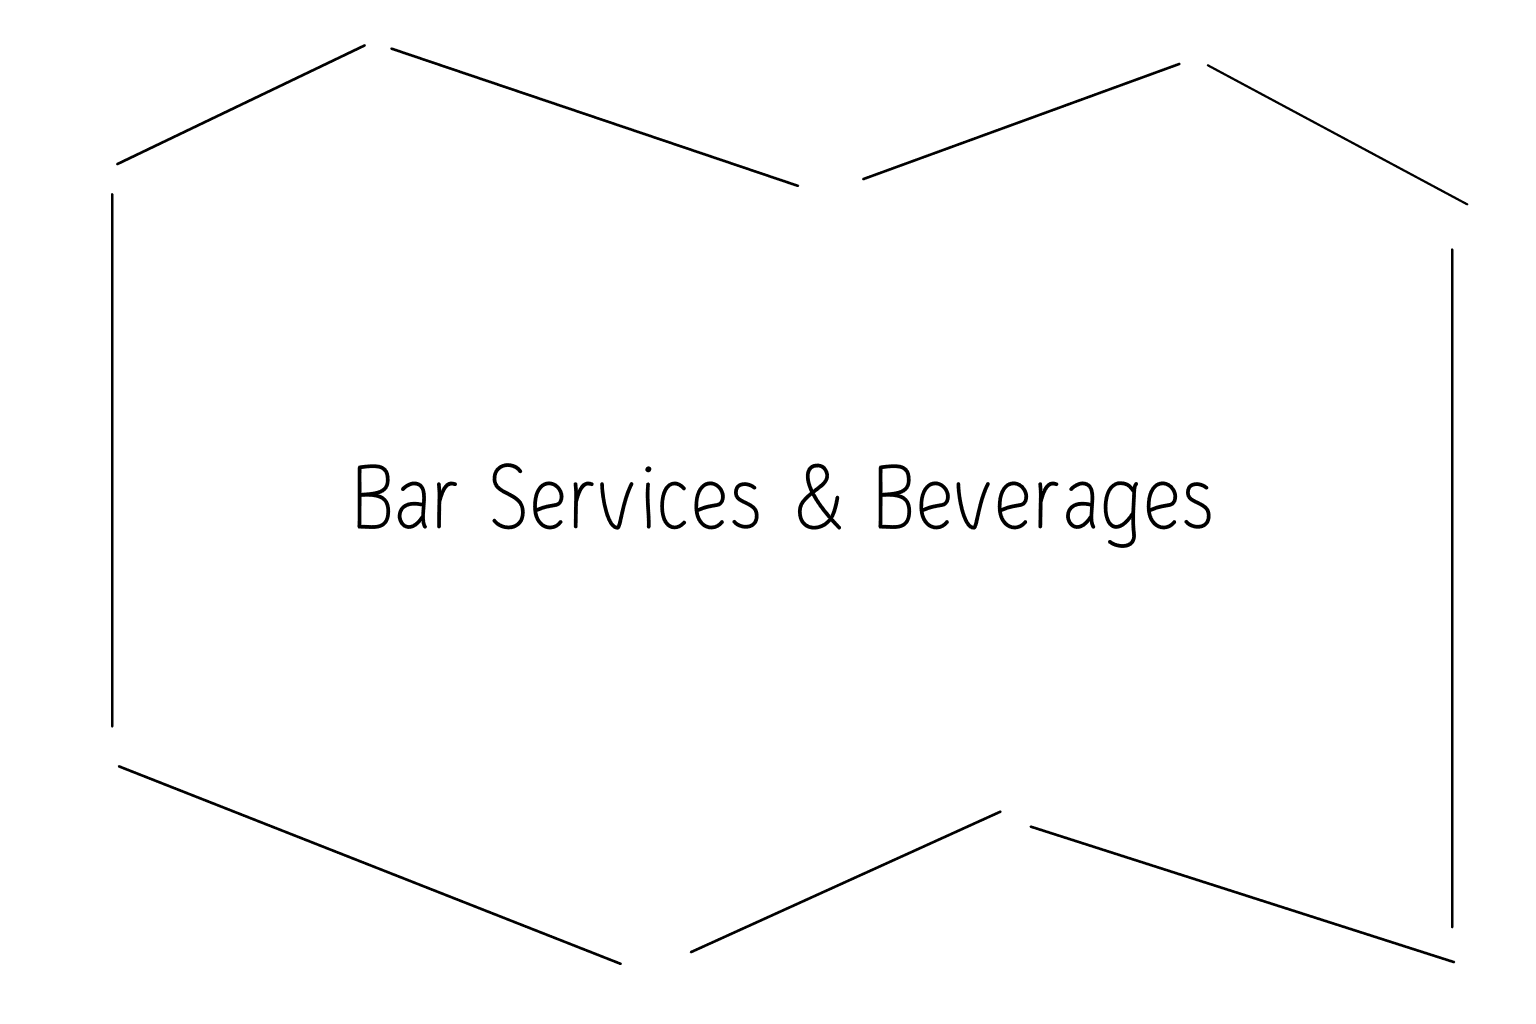 Illustrazione dei servizi bar per matrimoni